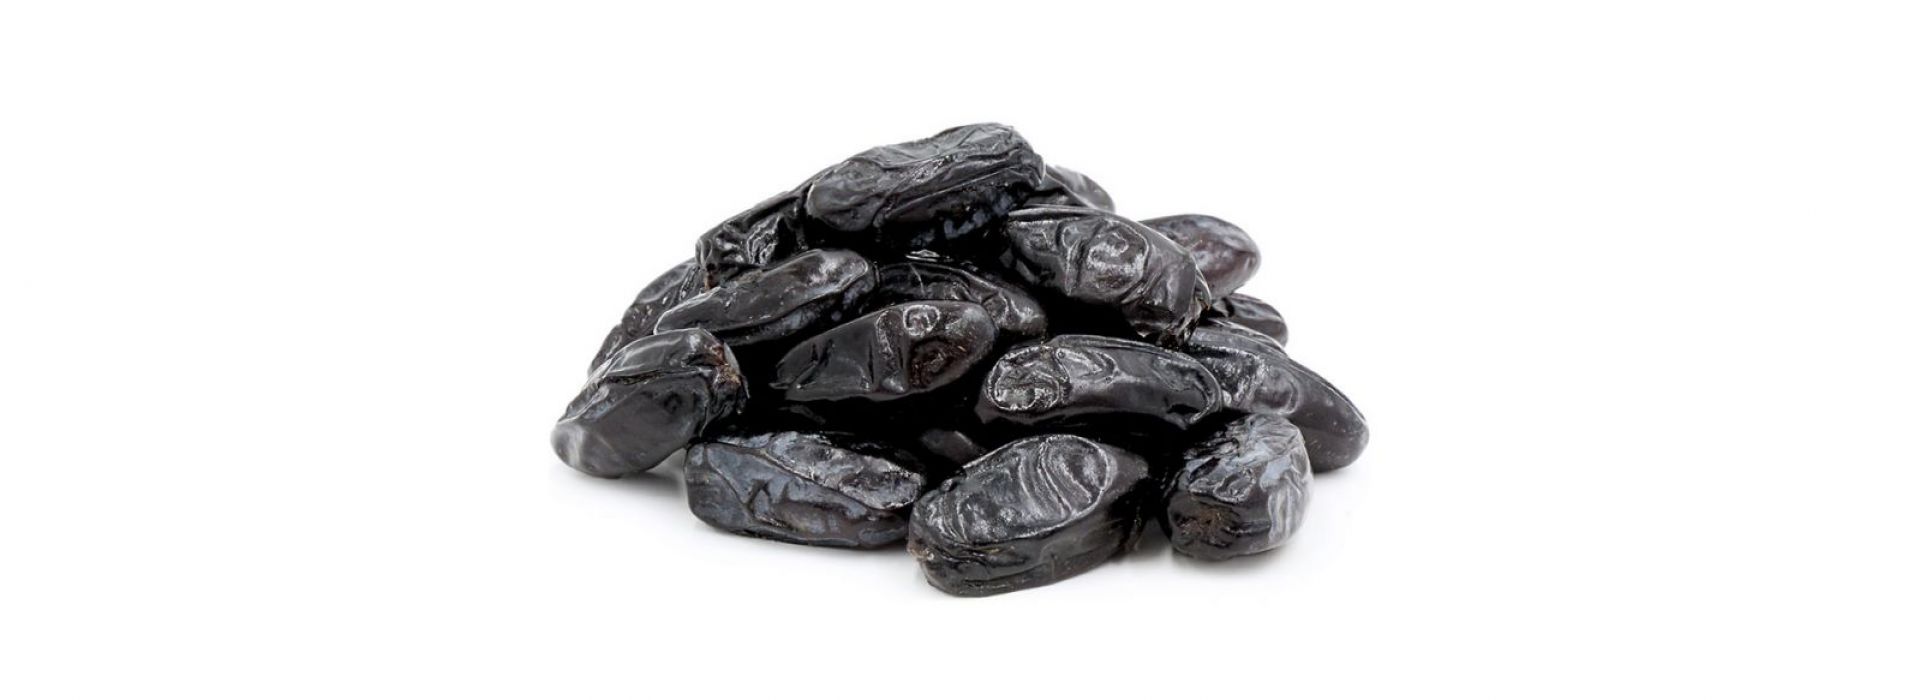 Black dates